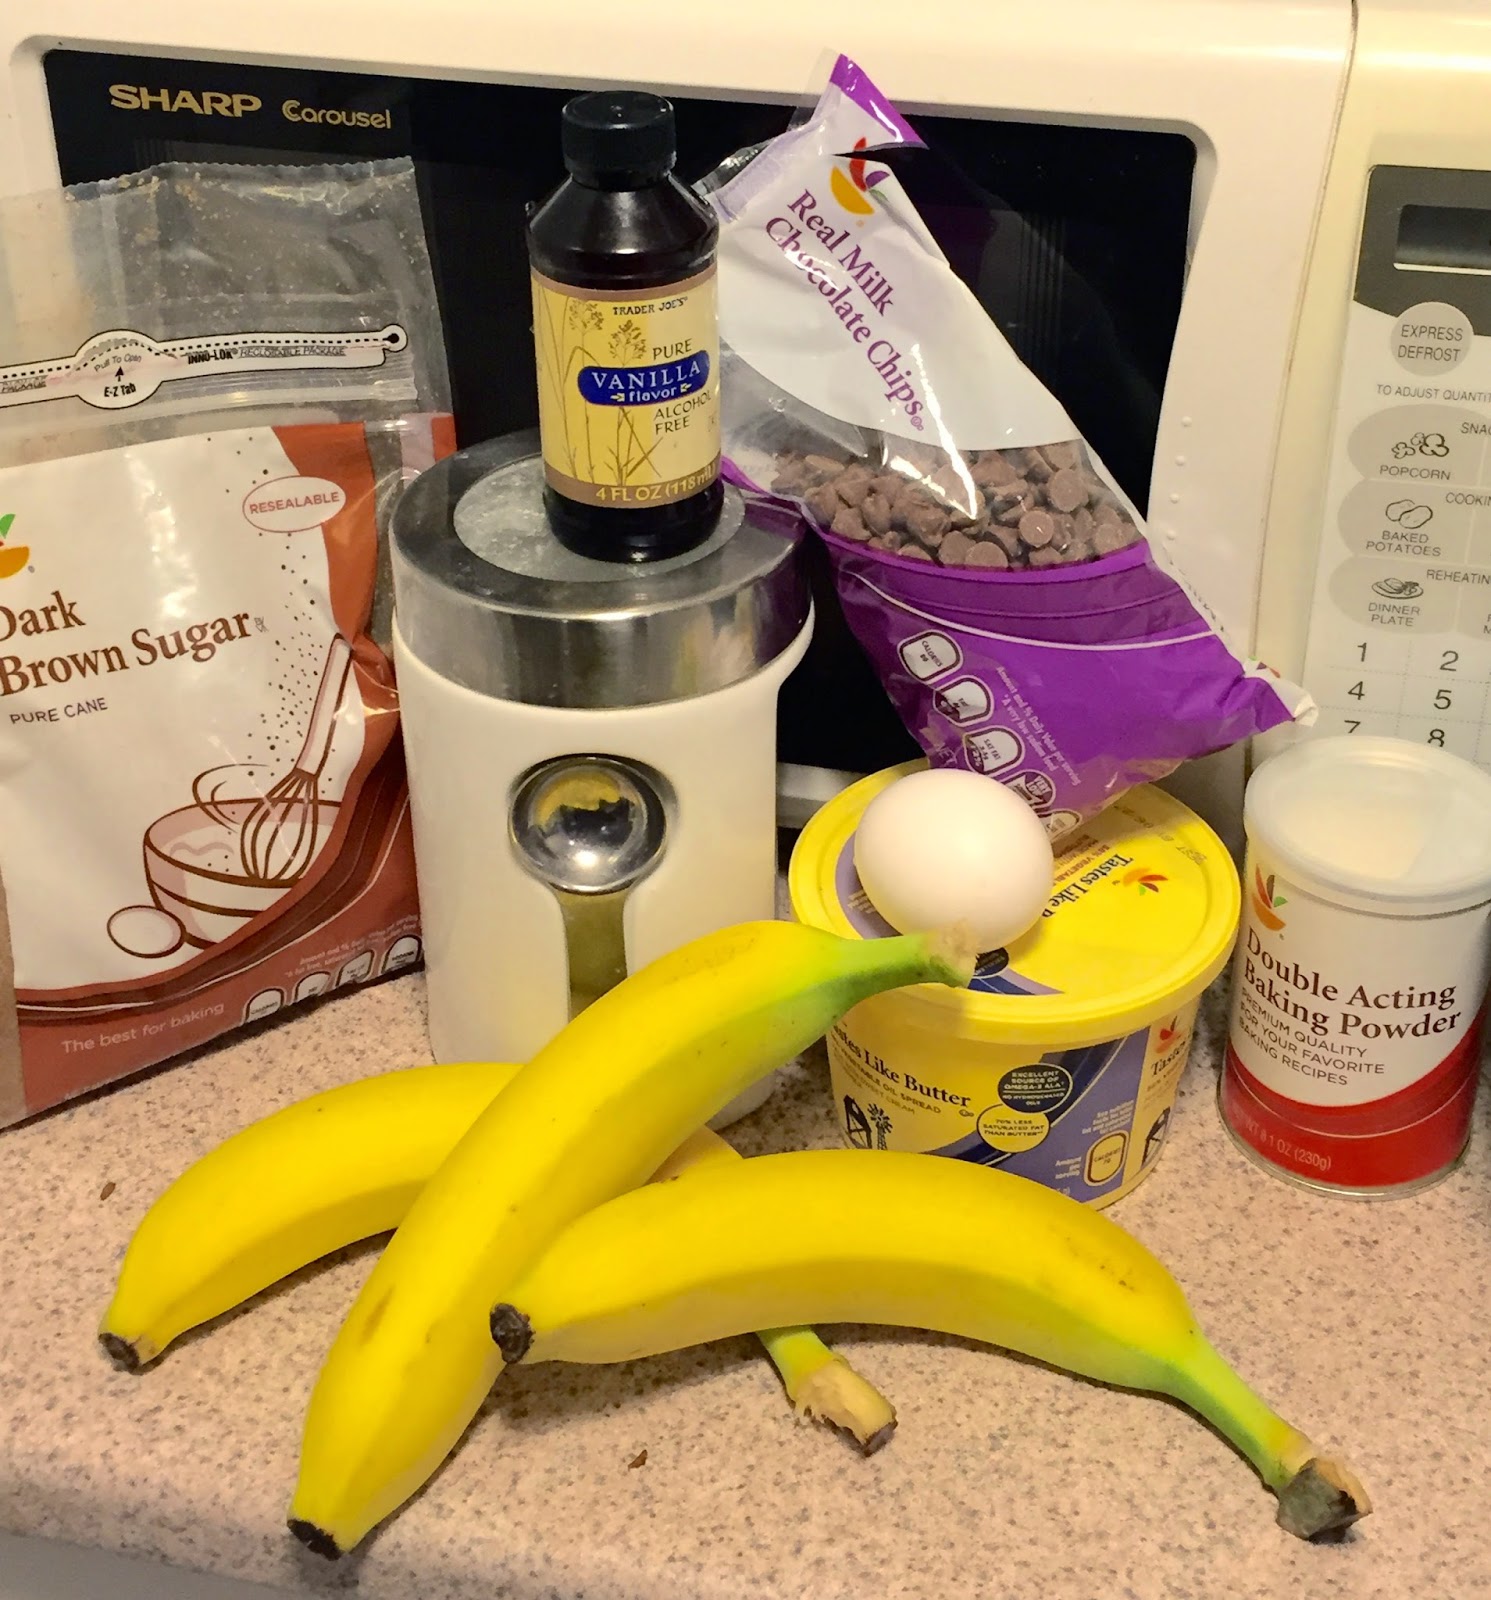 Banana Bread Recipe